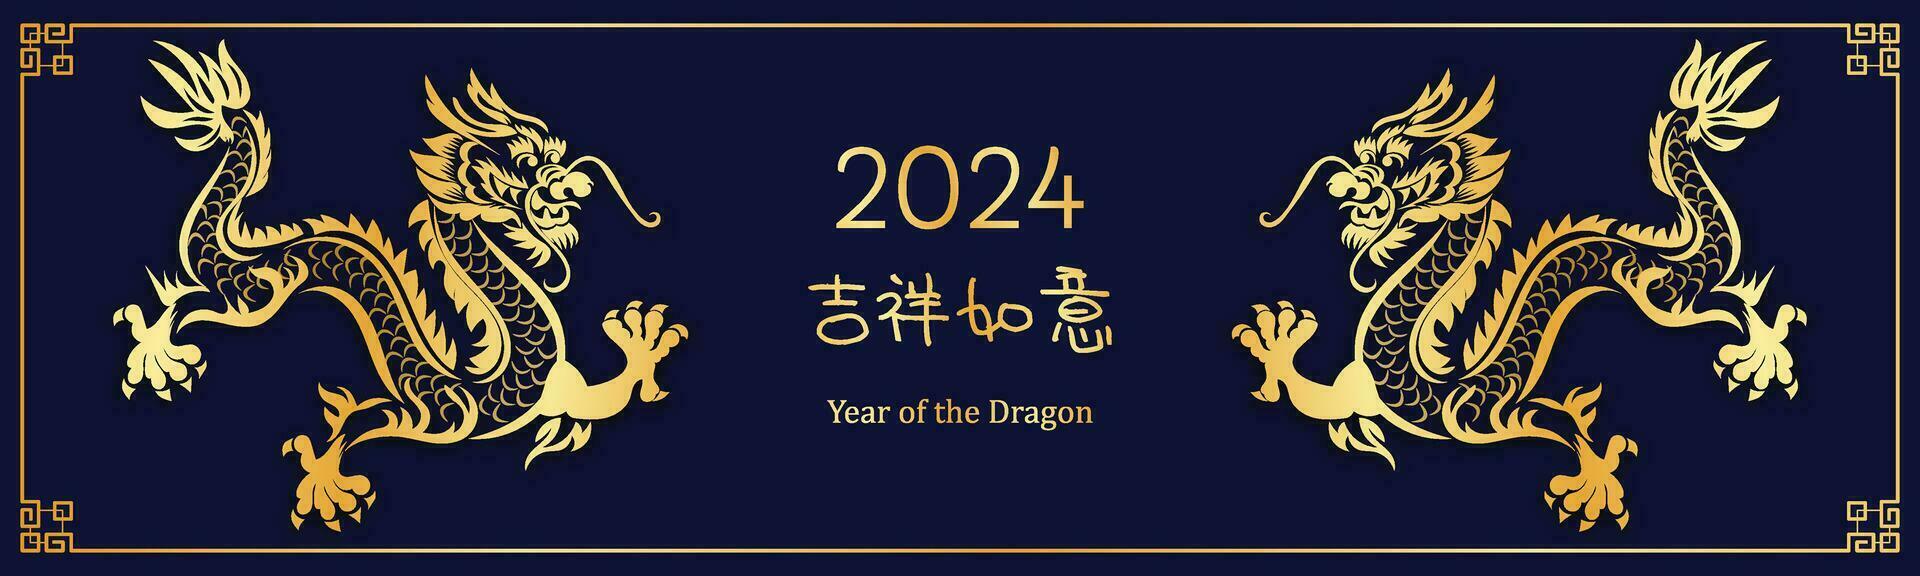 Cinese nuovo anno 2024, il anno di il Drago vettore